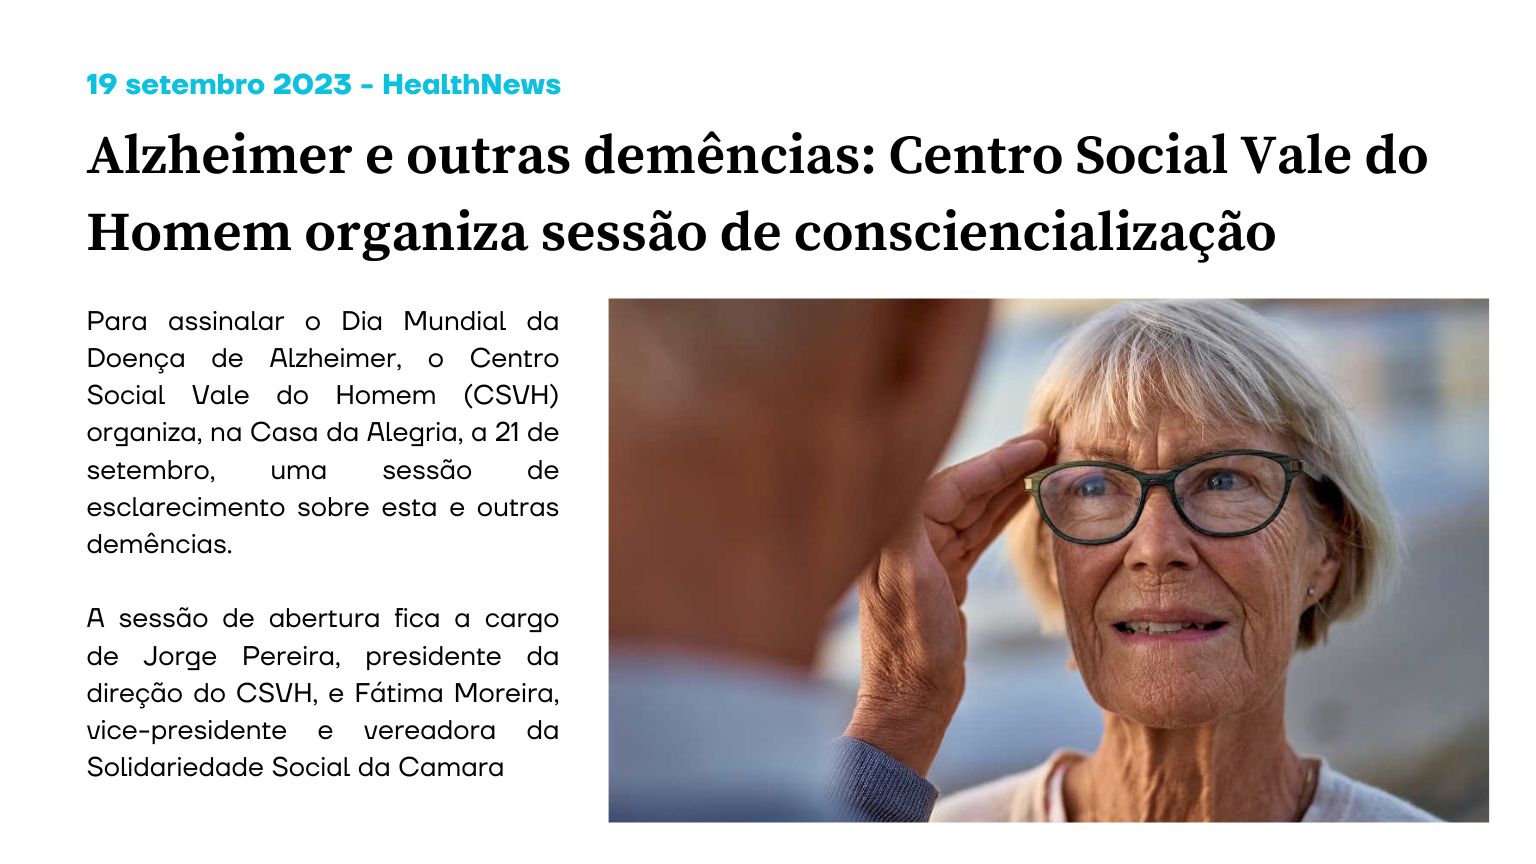 Alzheimer e outras demências: Centro Social Vale do Homem organiza sessão de consciencialização